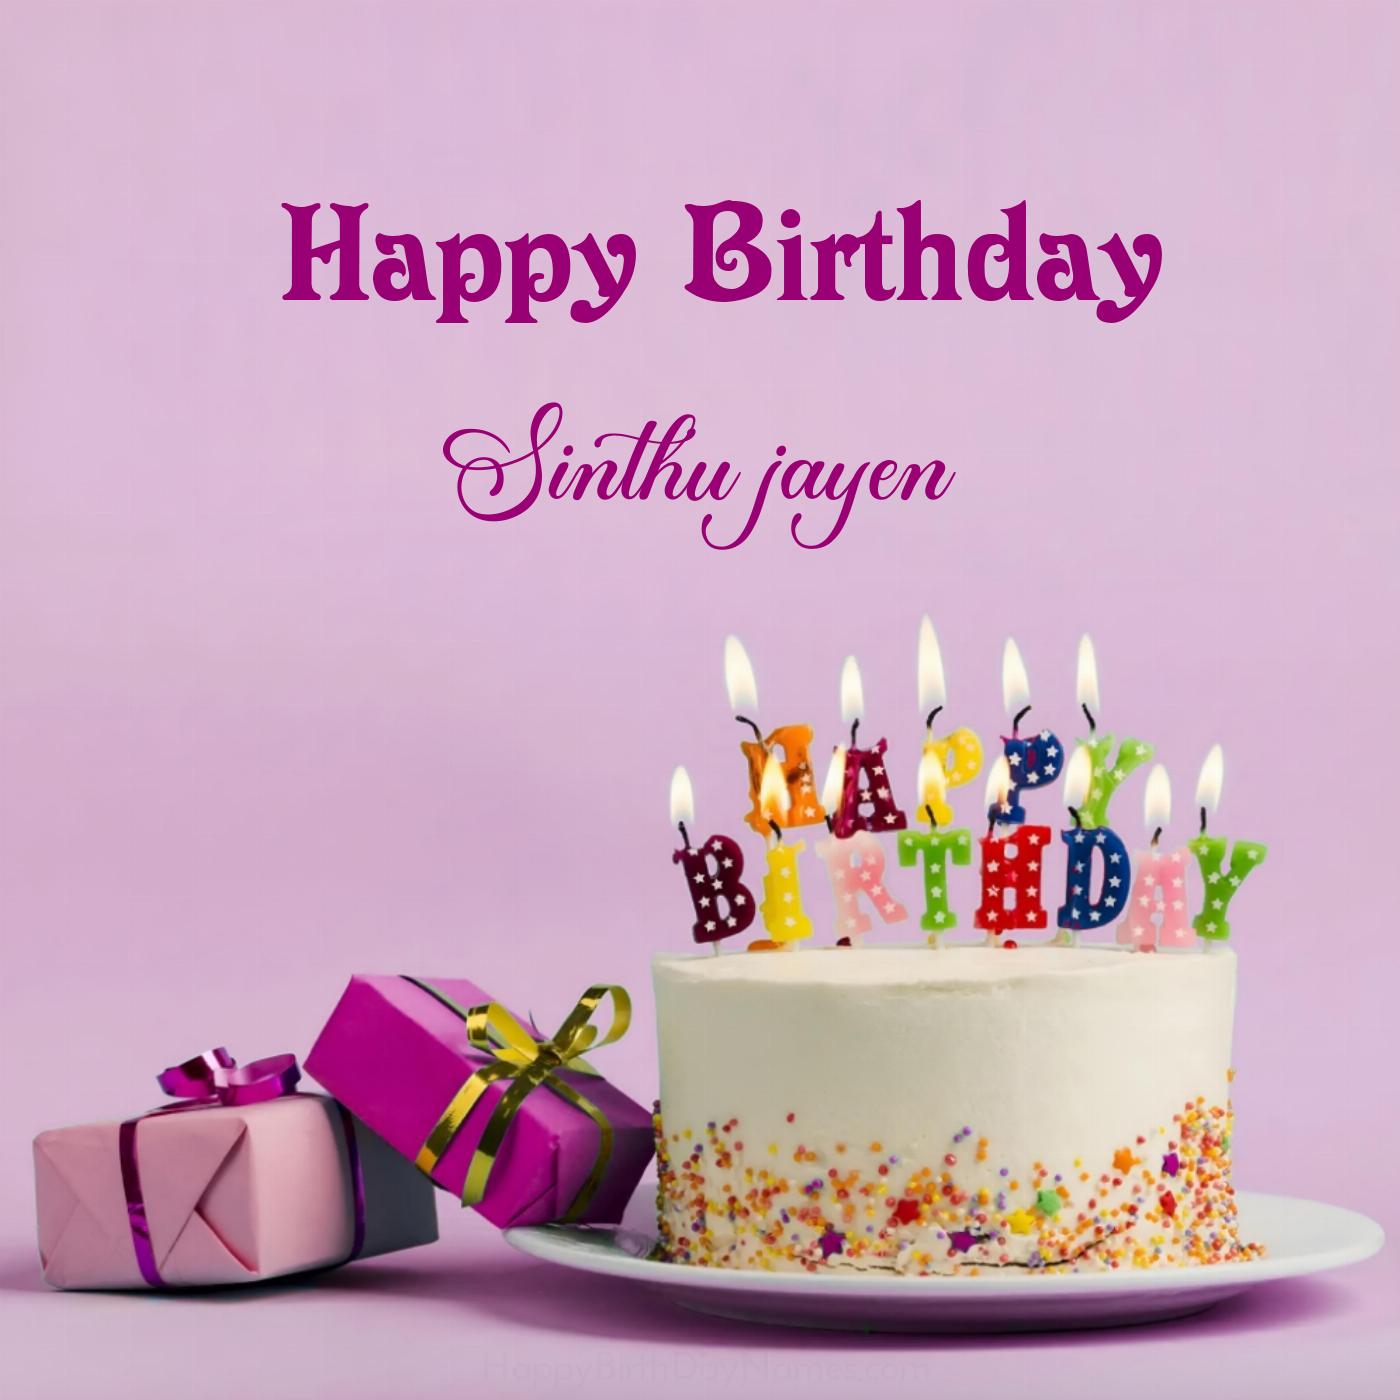 Happy Birthday Sinthu jayen Cake Gifts Card